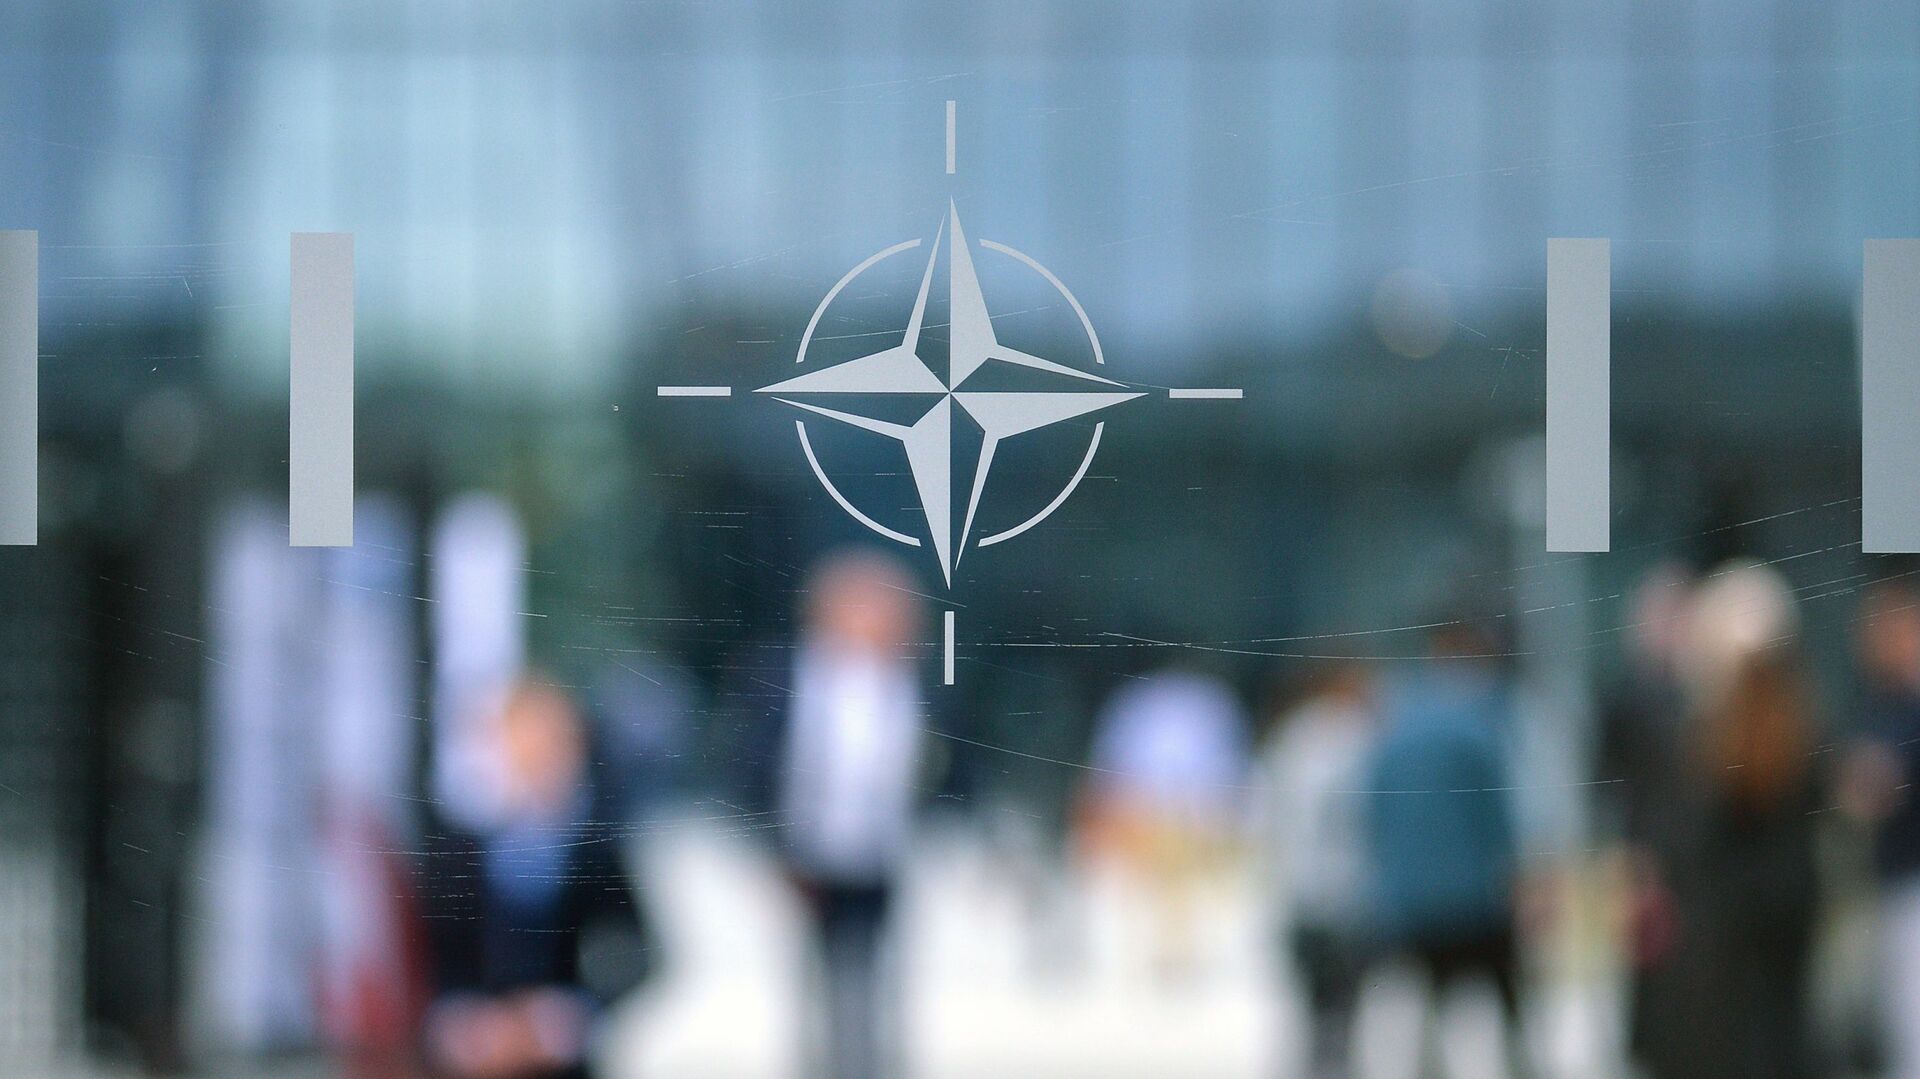 Эмблема Организации Североатлантического договора (НАТО) в Брюсселе.   - Sputnik Абхазия, 1920, 31.05.2022